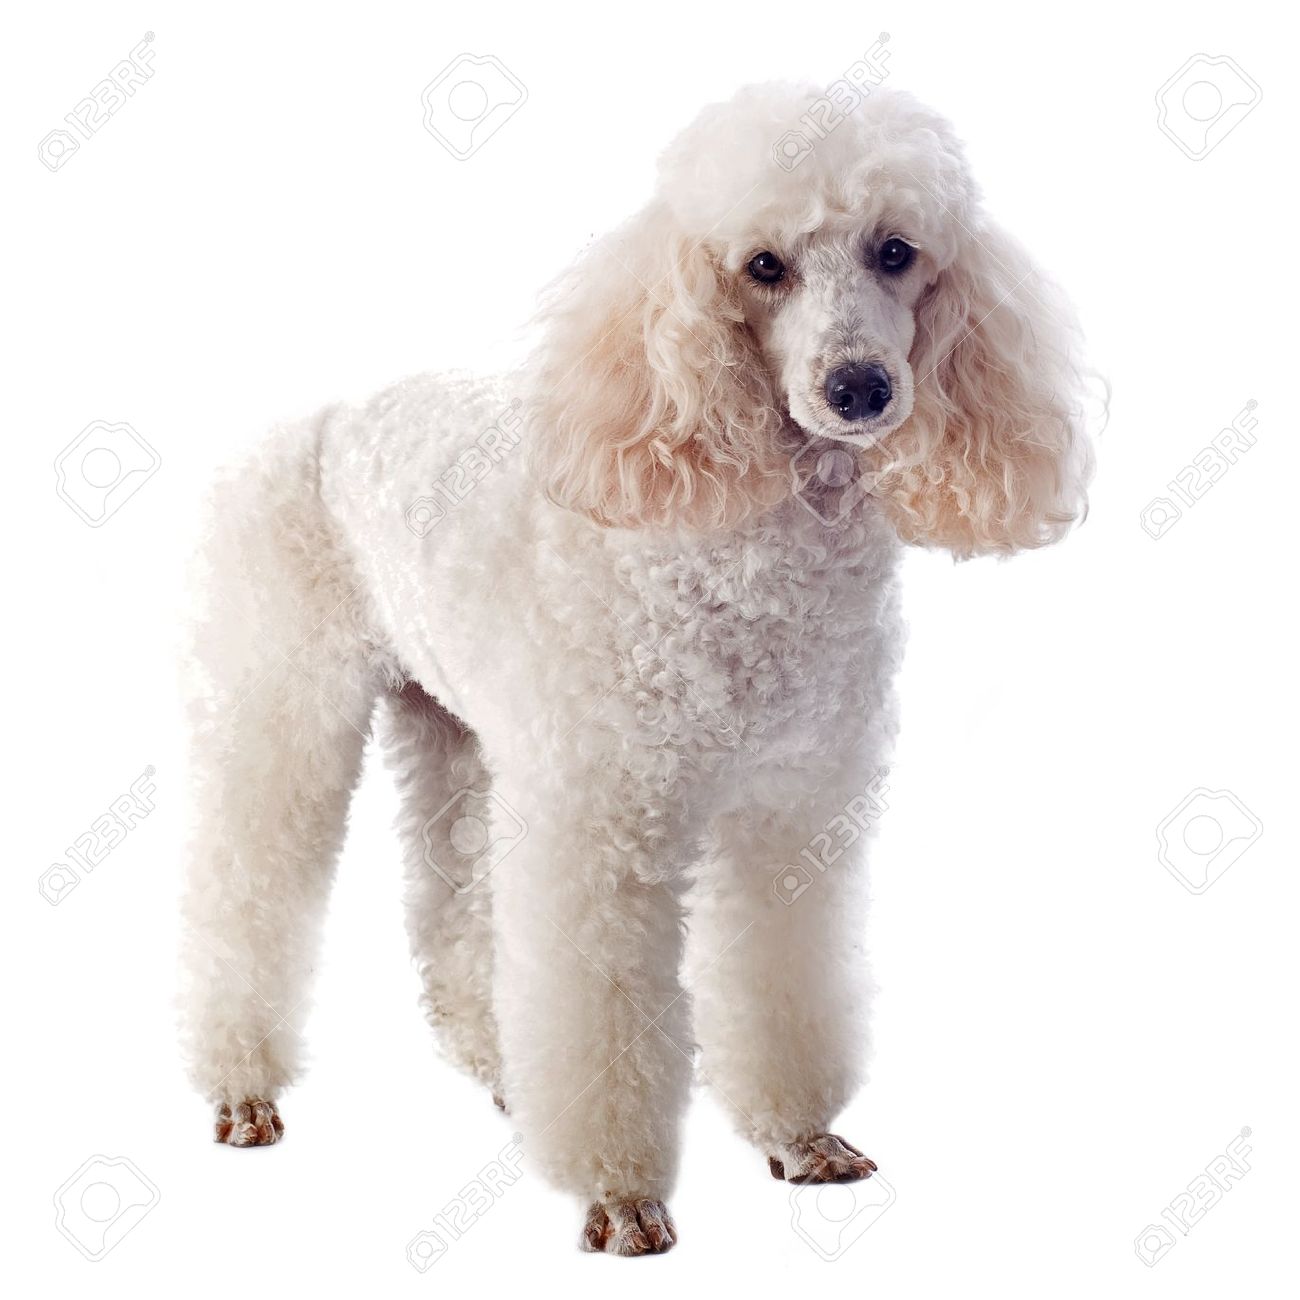 White Poodle Dog Posing